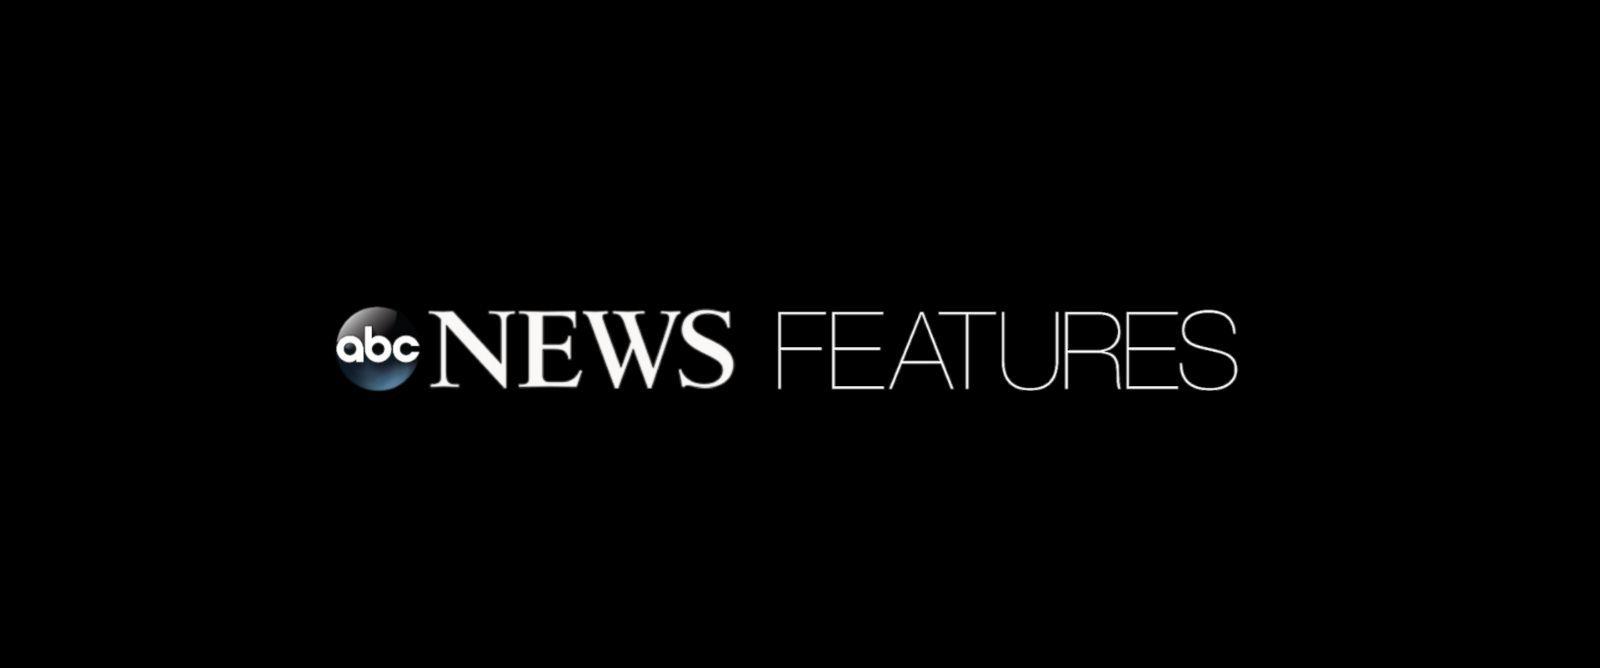 Abcnews.go.com Logo - Edward R. Murrow Awards - ABC News